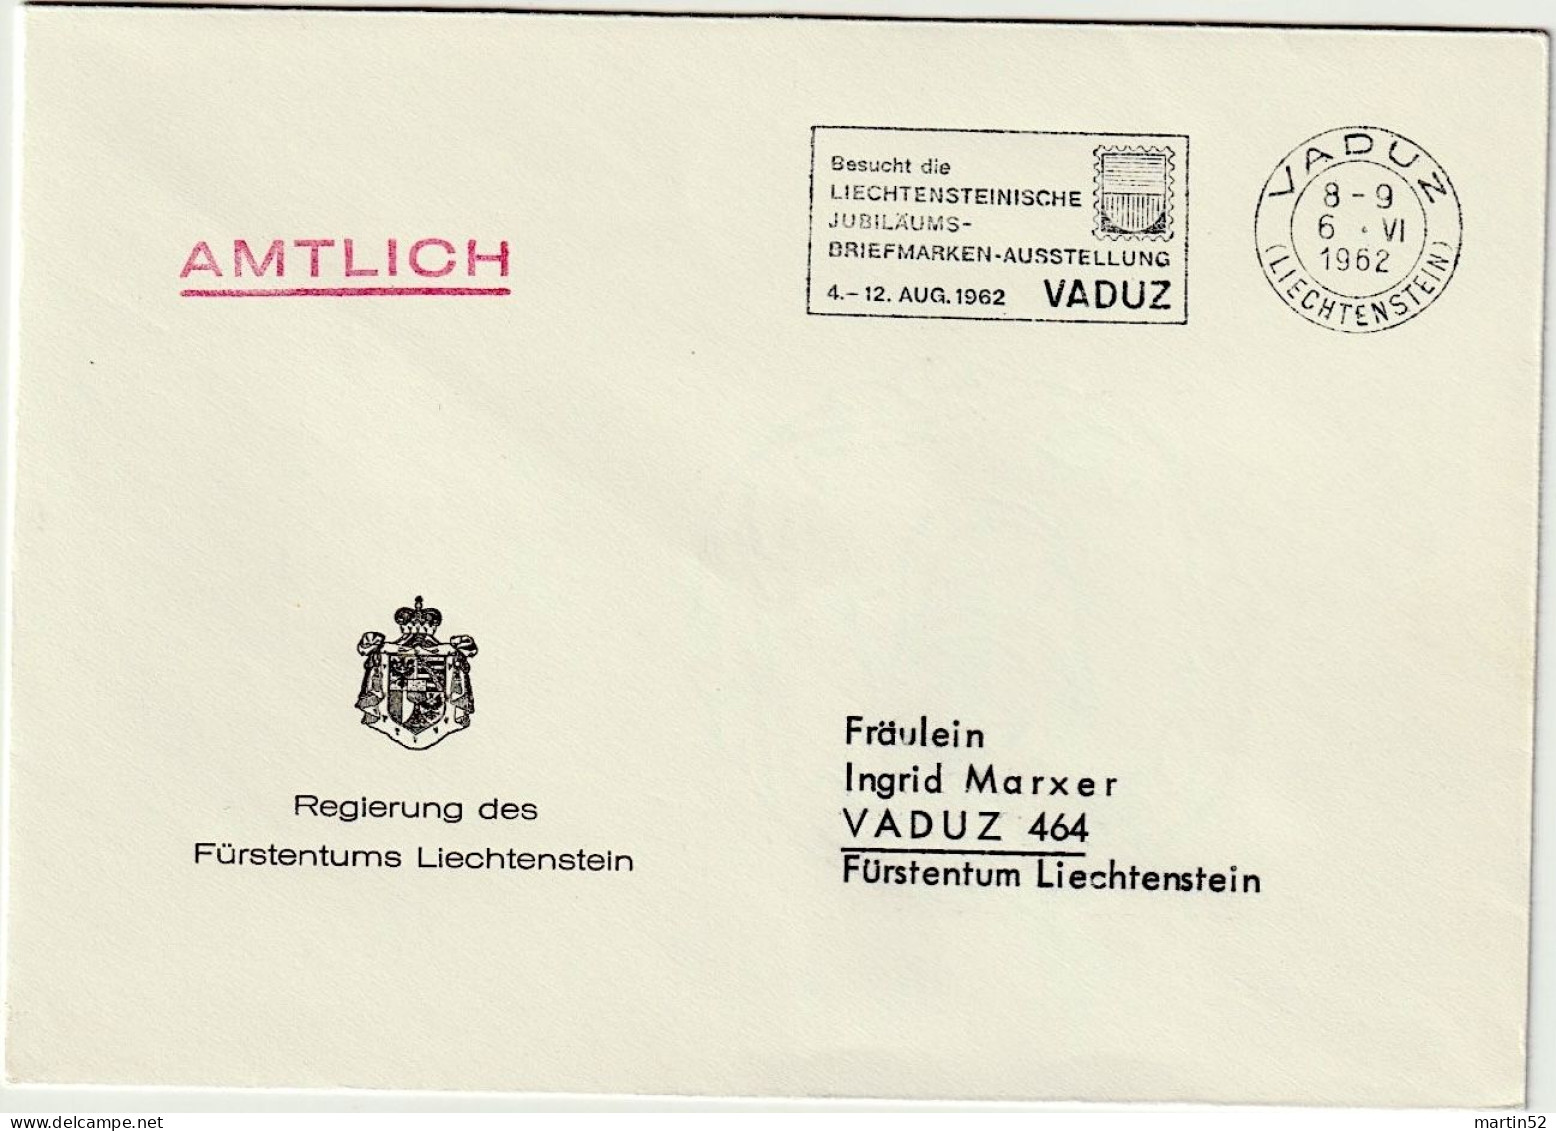 Liechtenstein 1962: Regierung Des F.L. AMTLICH Mit ⊙ VADUZ 6.VI.1962 Besucht Die Jubiläums-Briefmarken-Ausstellung - Service